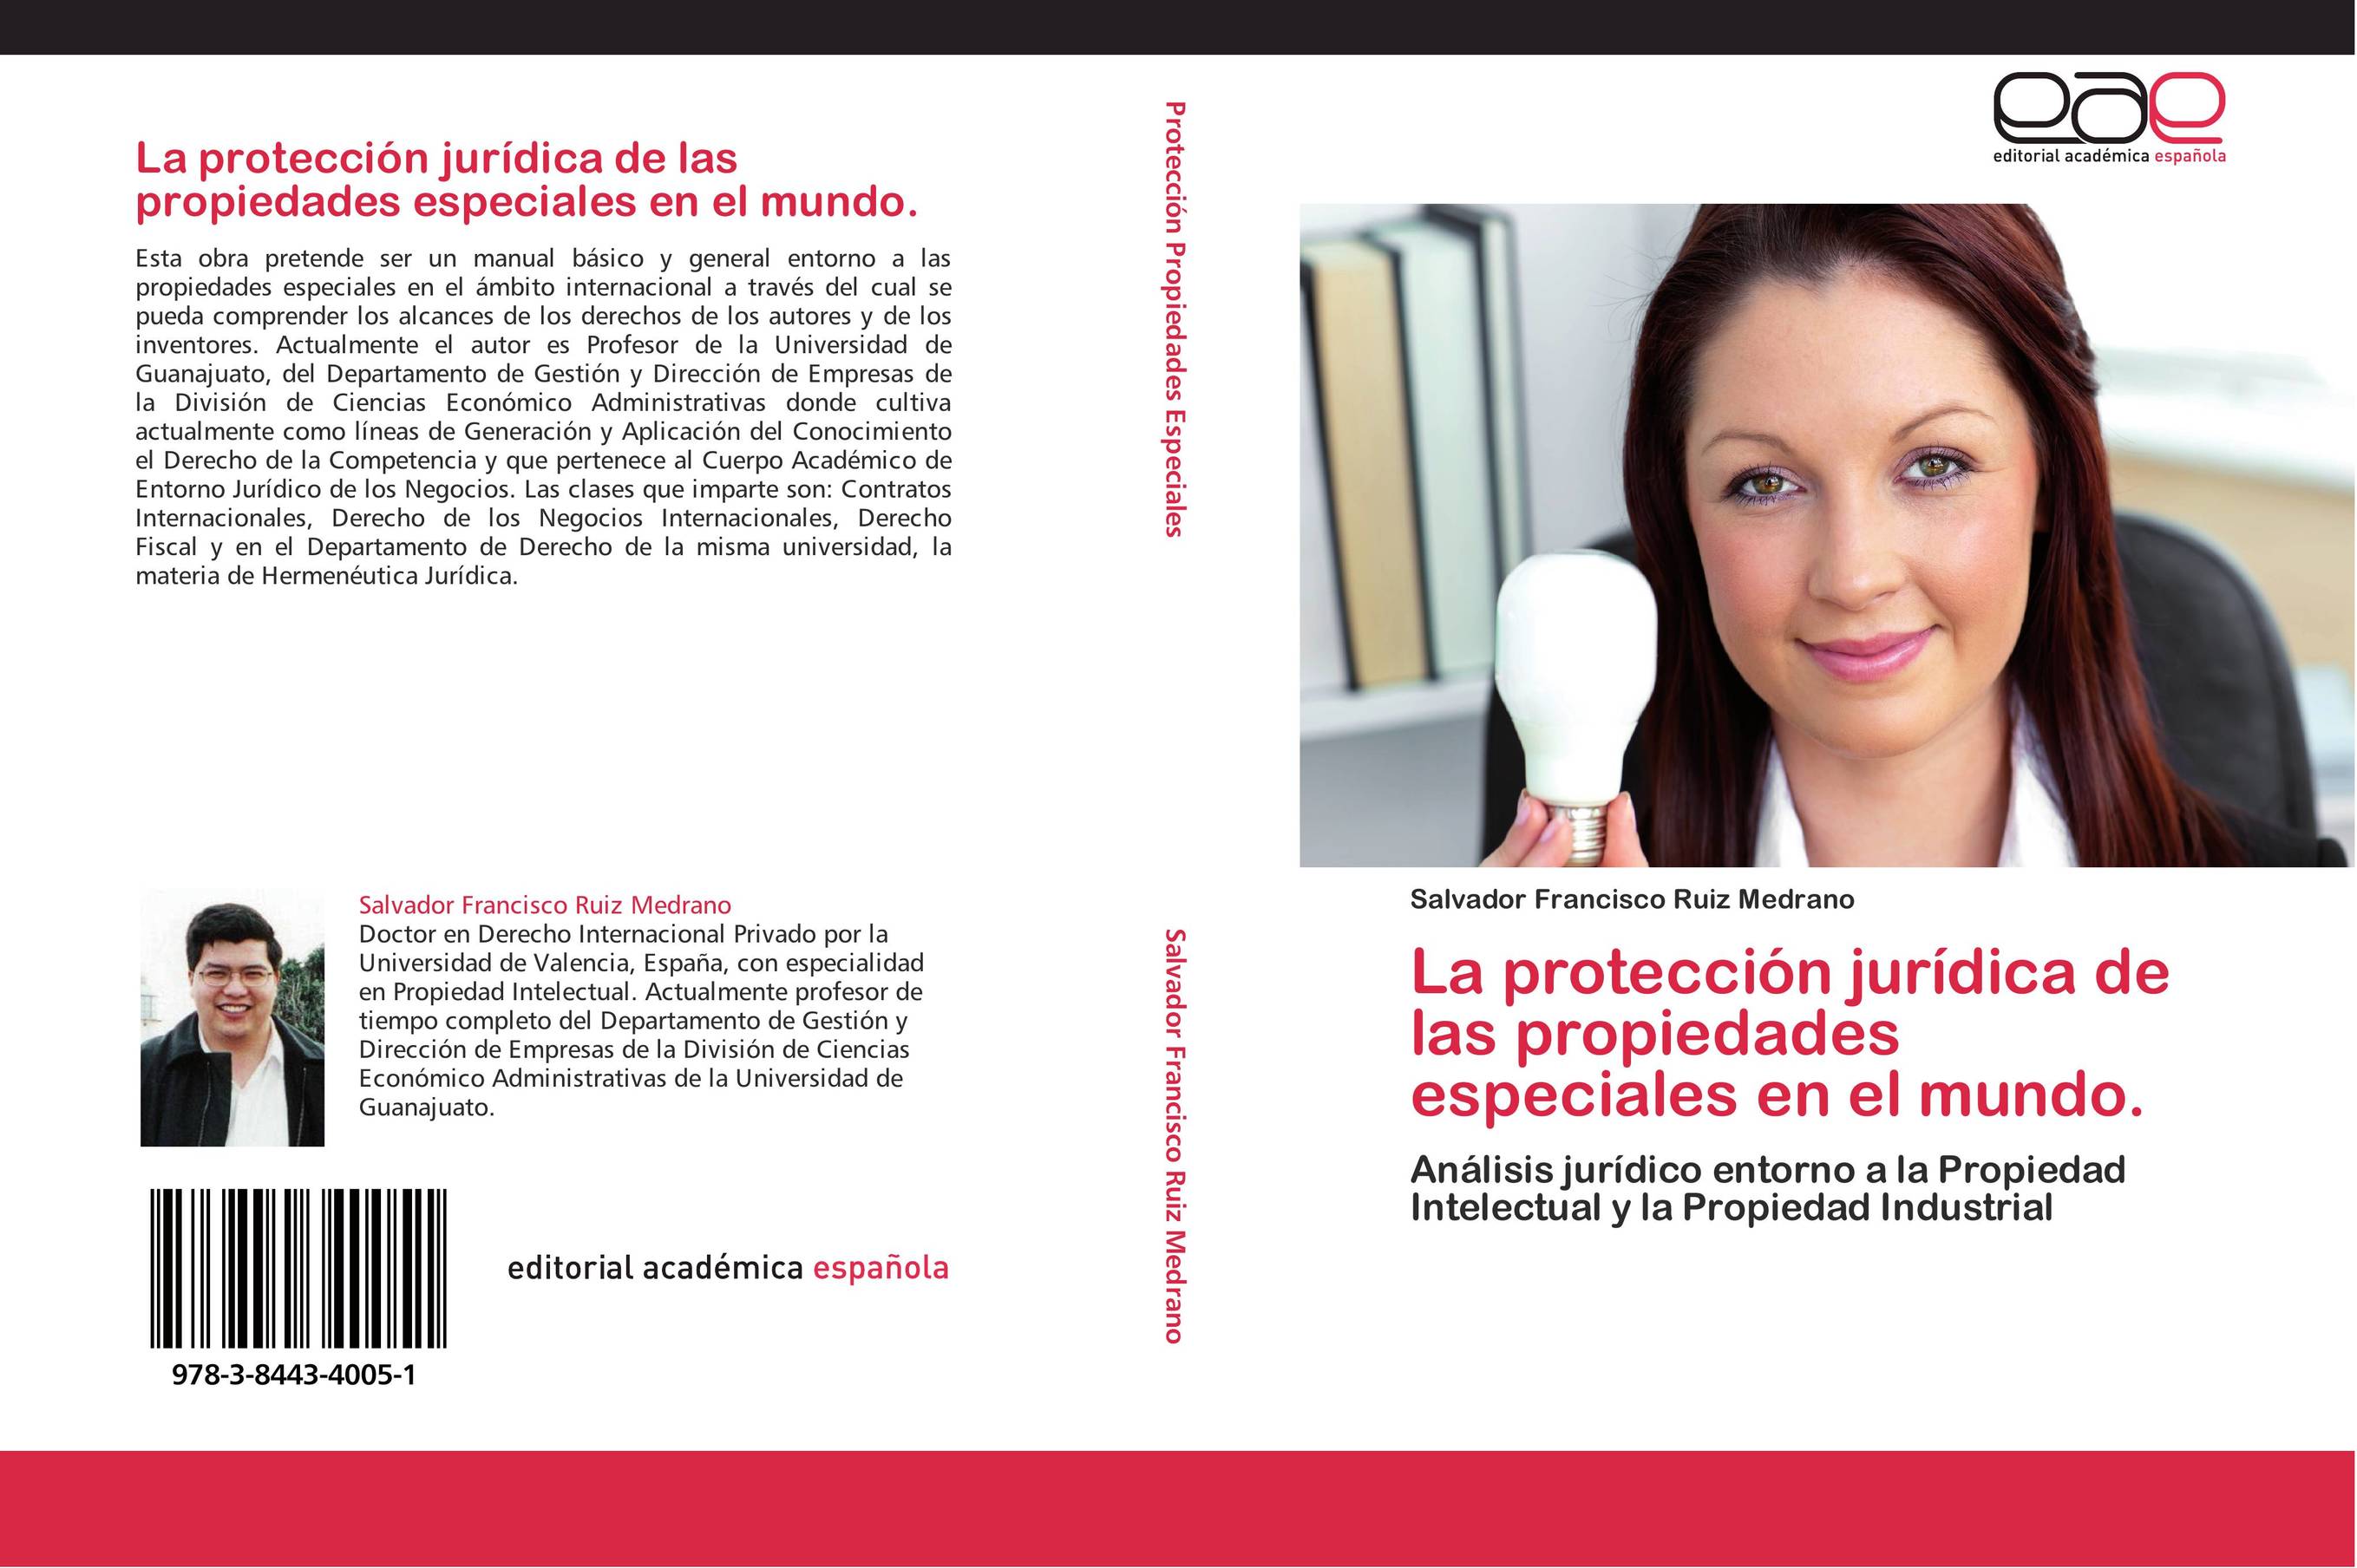 La protección jurídica de las propiedades especiales en el mundo.